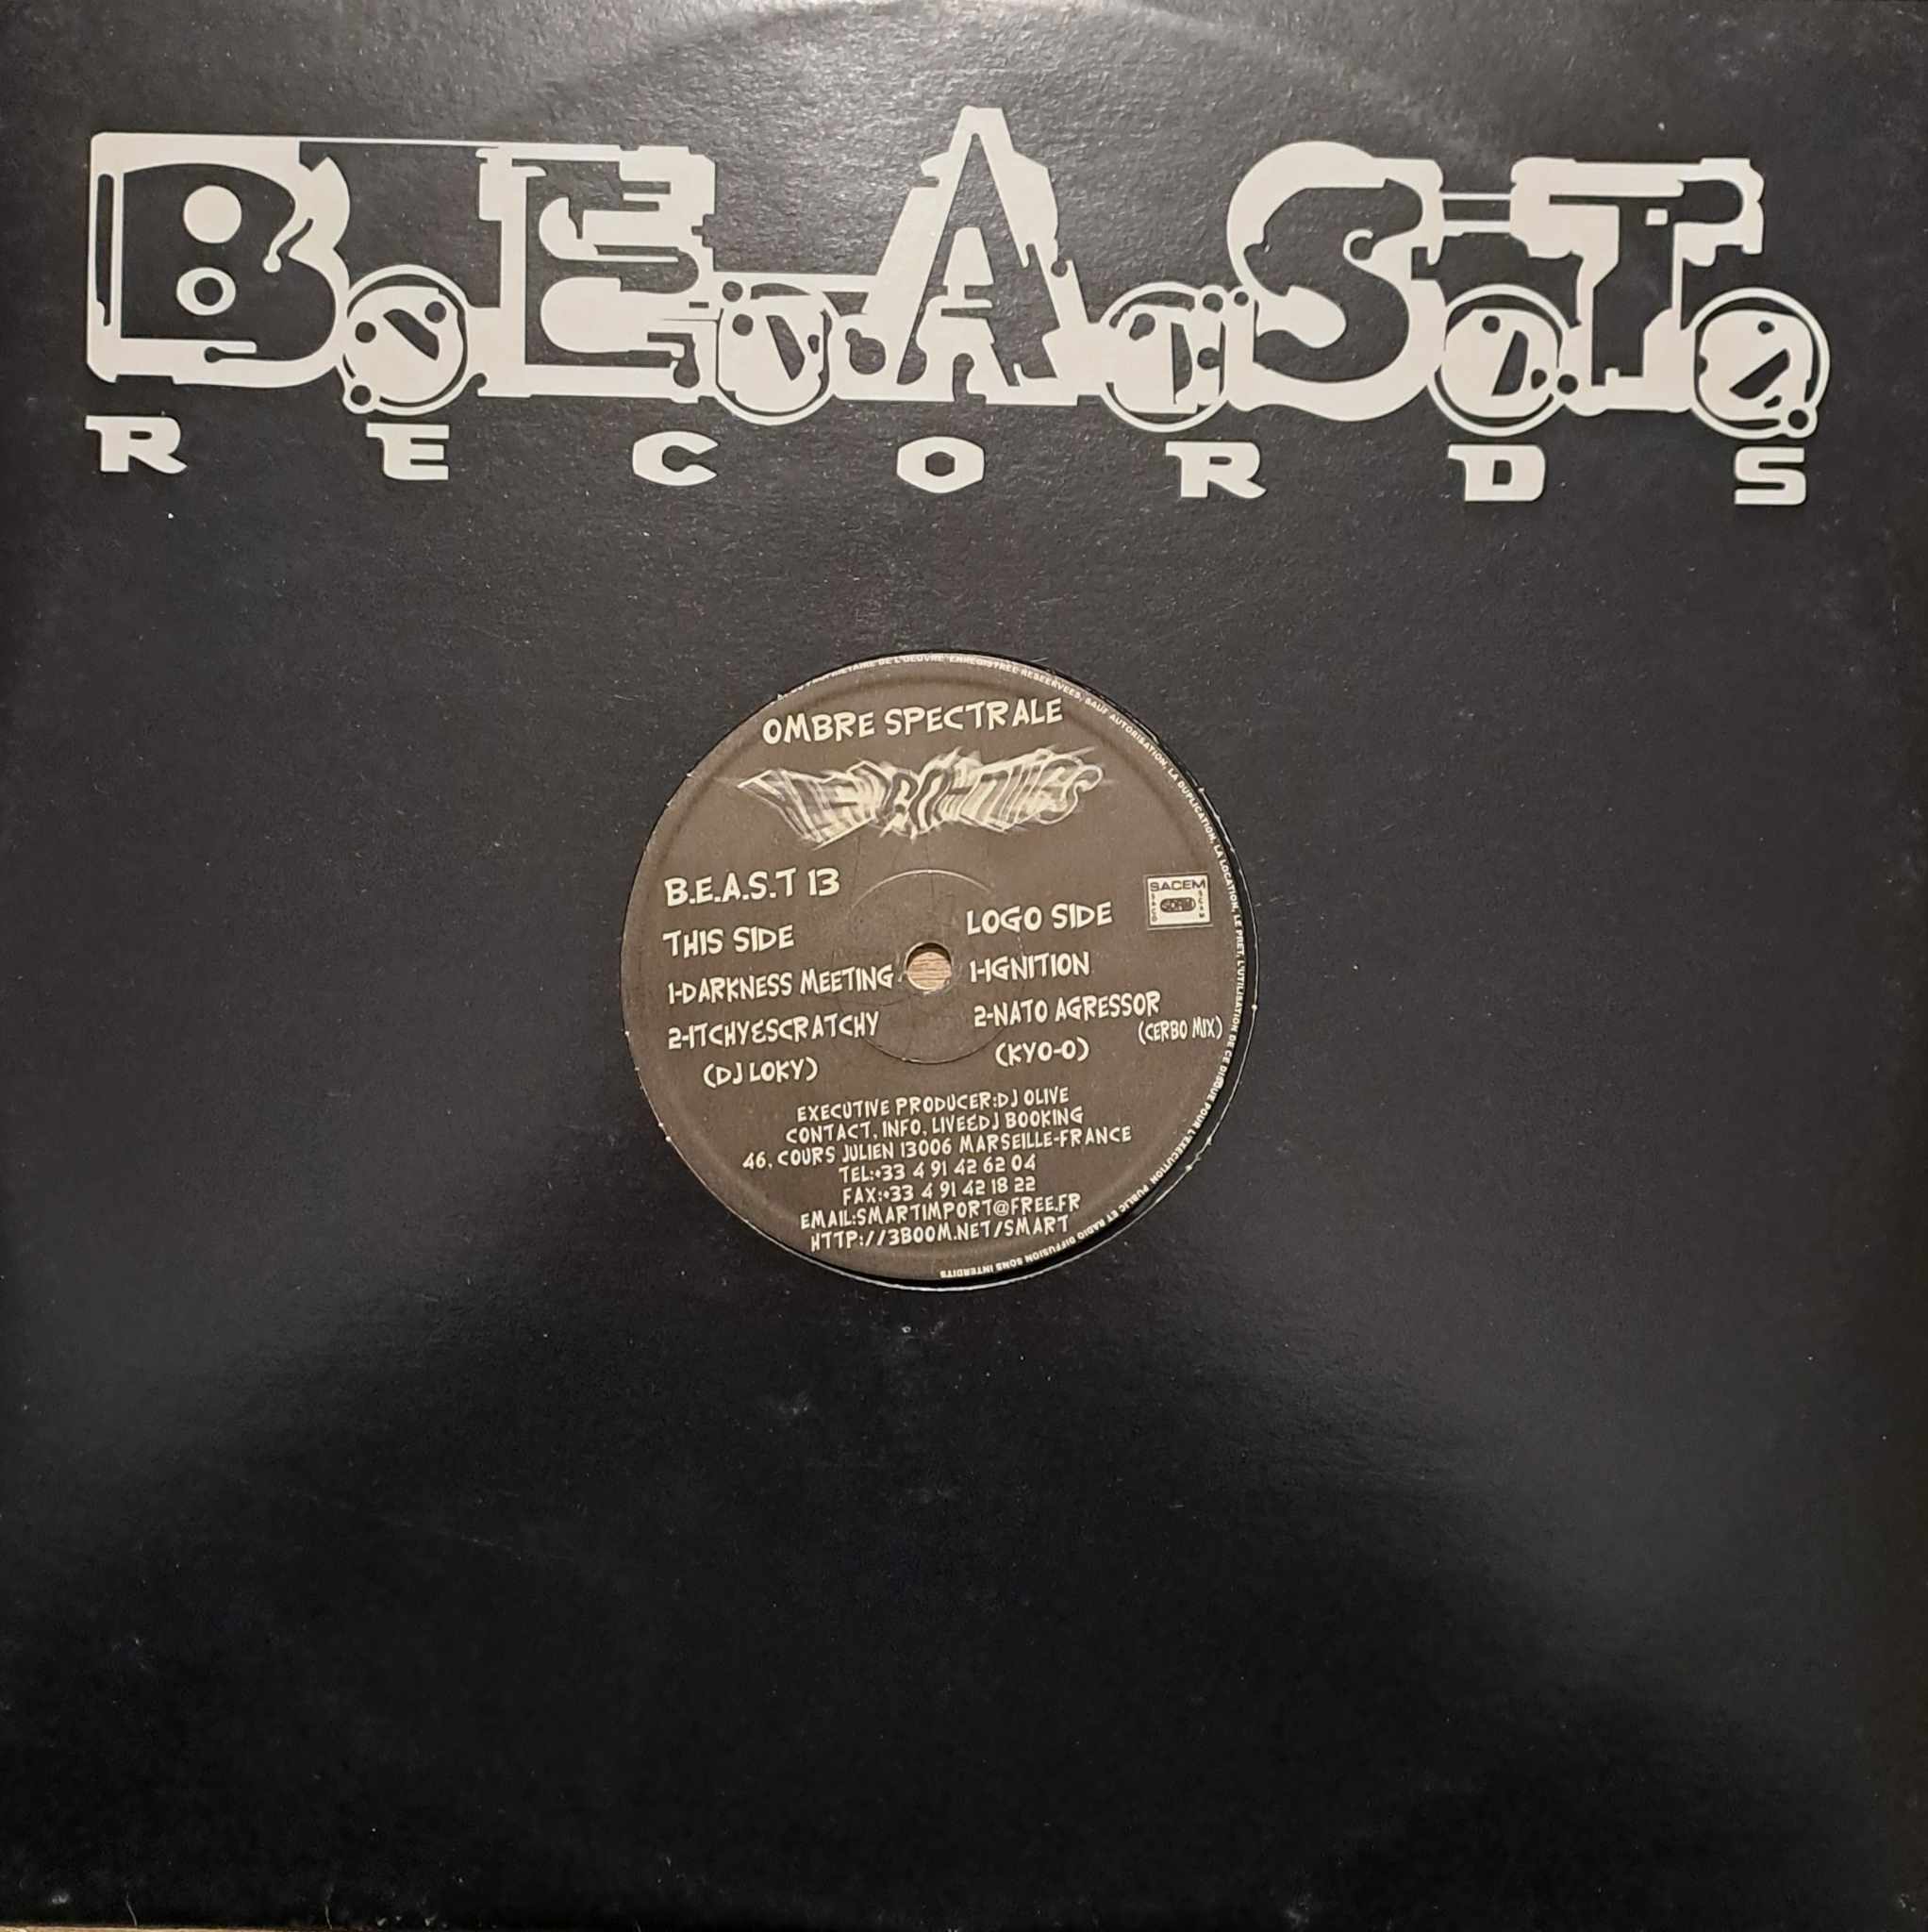 B.E.A.S.T. 13 - vinyle hardcore